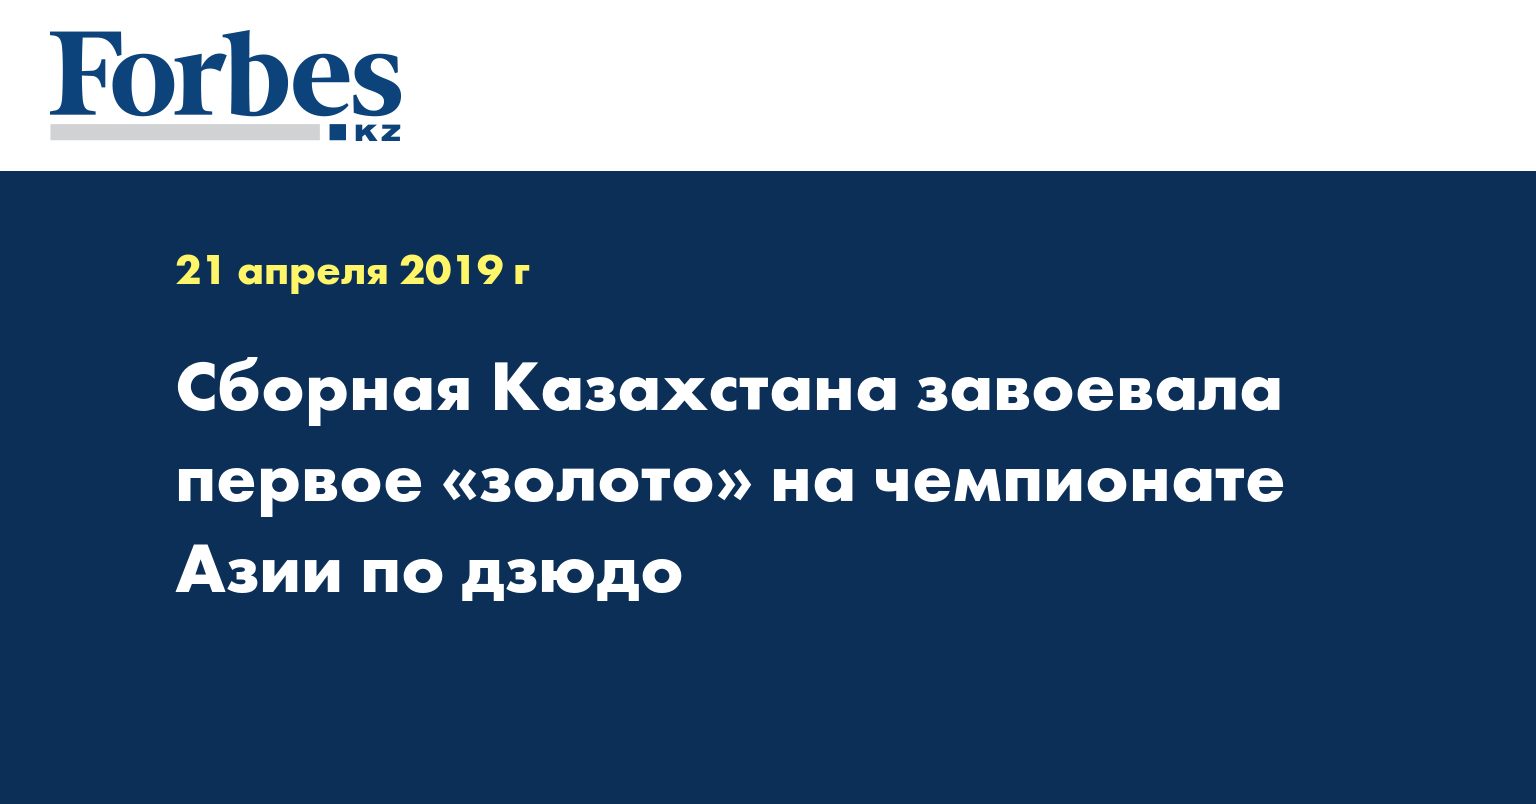 Сборная Казахстана завоевала первое «золото» на чемпионате Азии по дзюдо